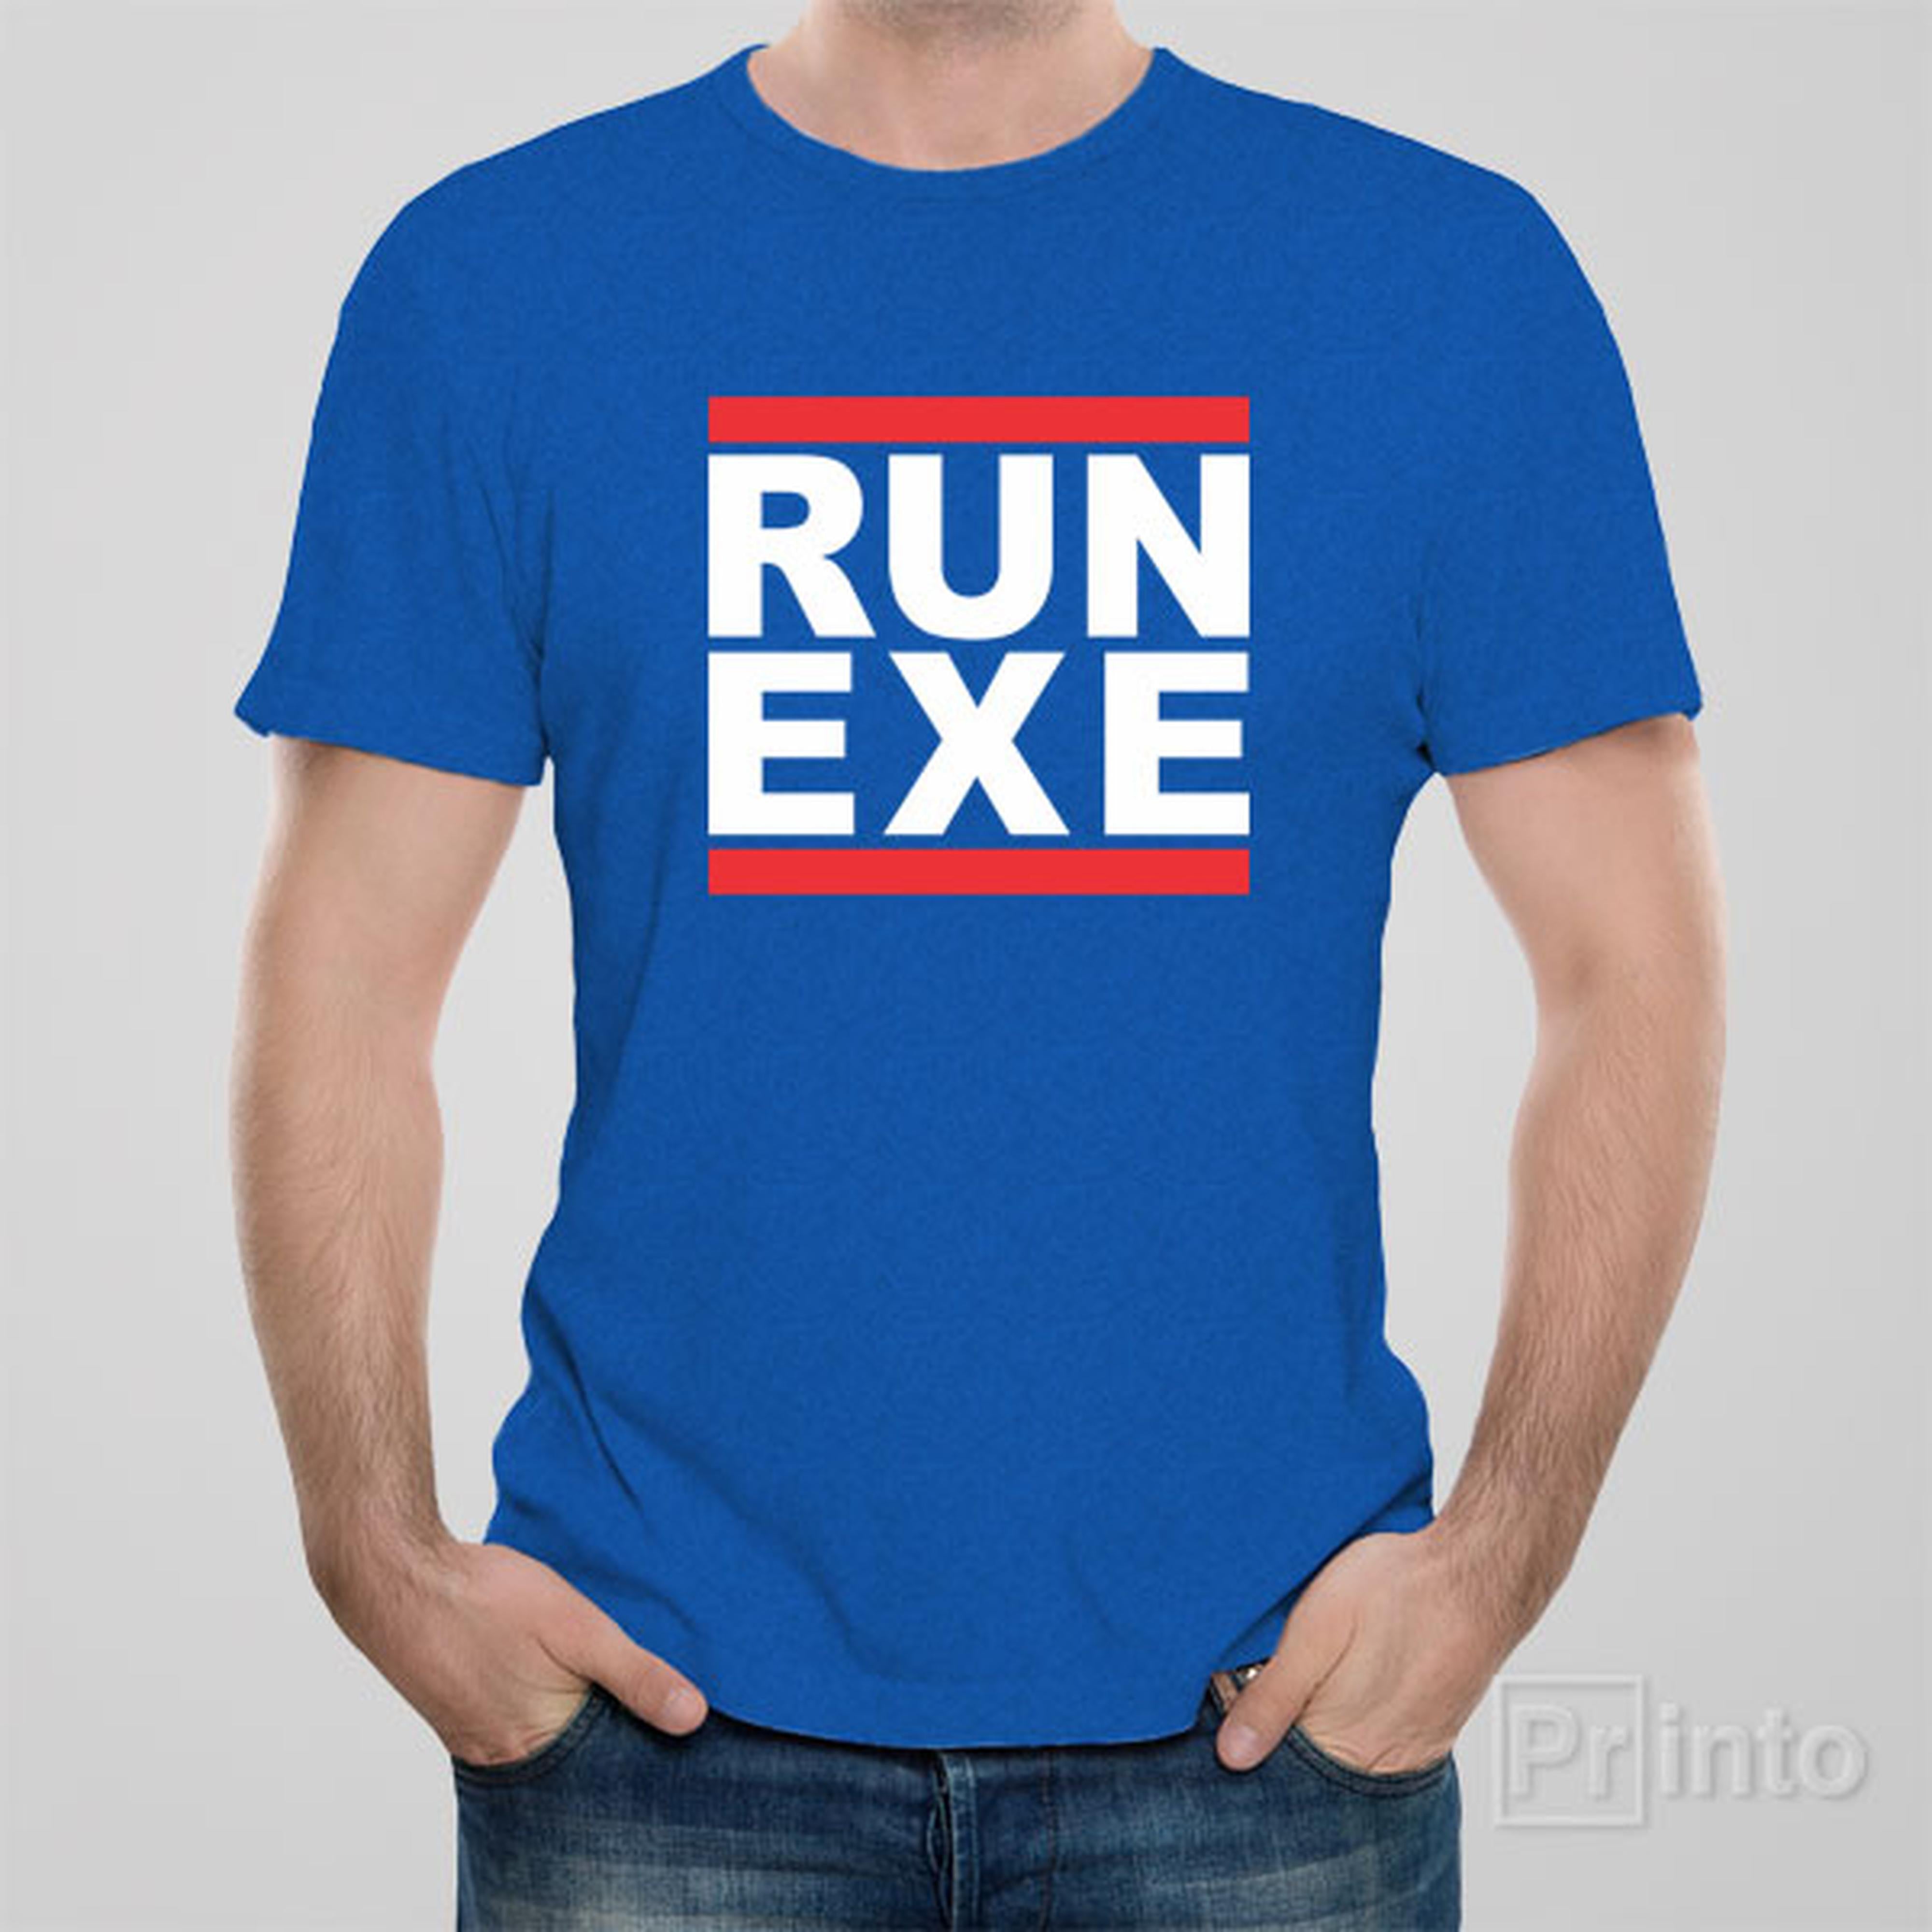 run-exe